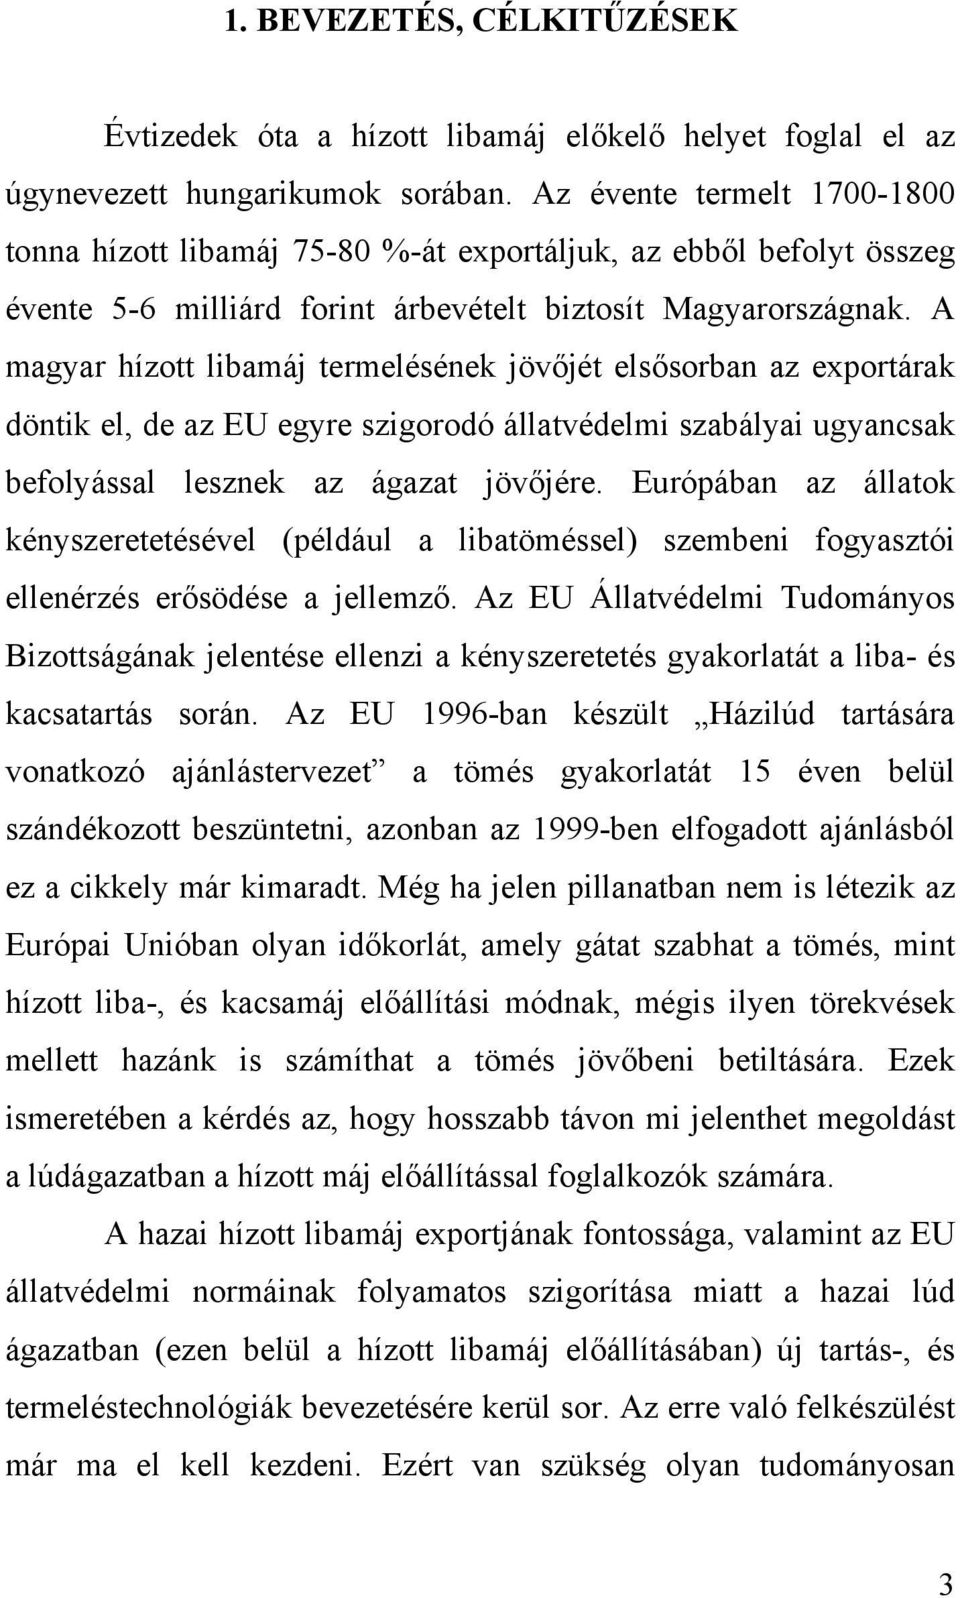 A magyar hízott libamáj termelésének jövőjét elsősorban az exportárak döntik el, de az EU egyre szigorodó állatvédelmi szabályai ugyancsak befolyással lesznek az ágazat jövőjére.